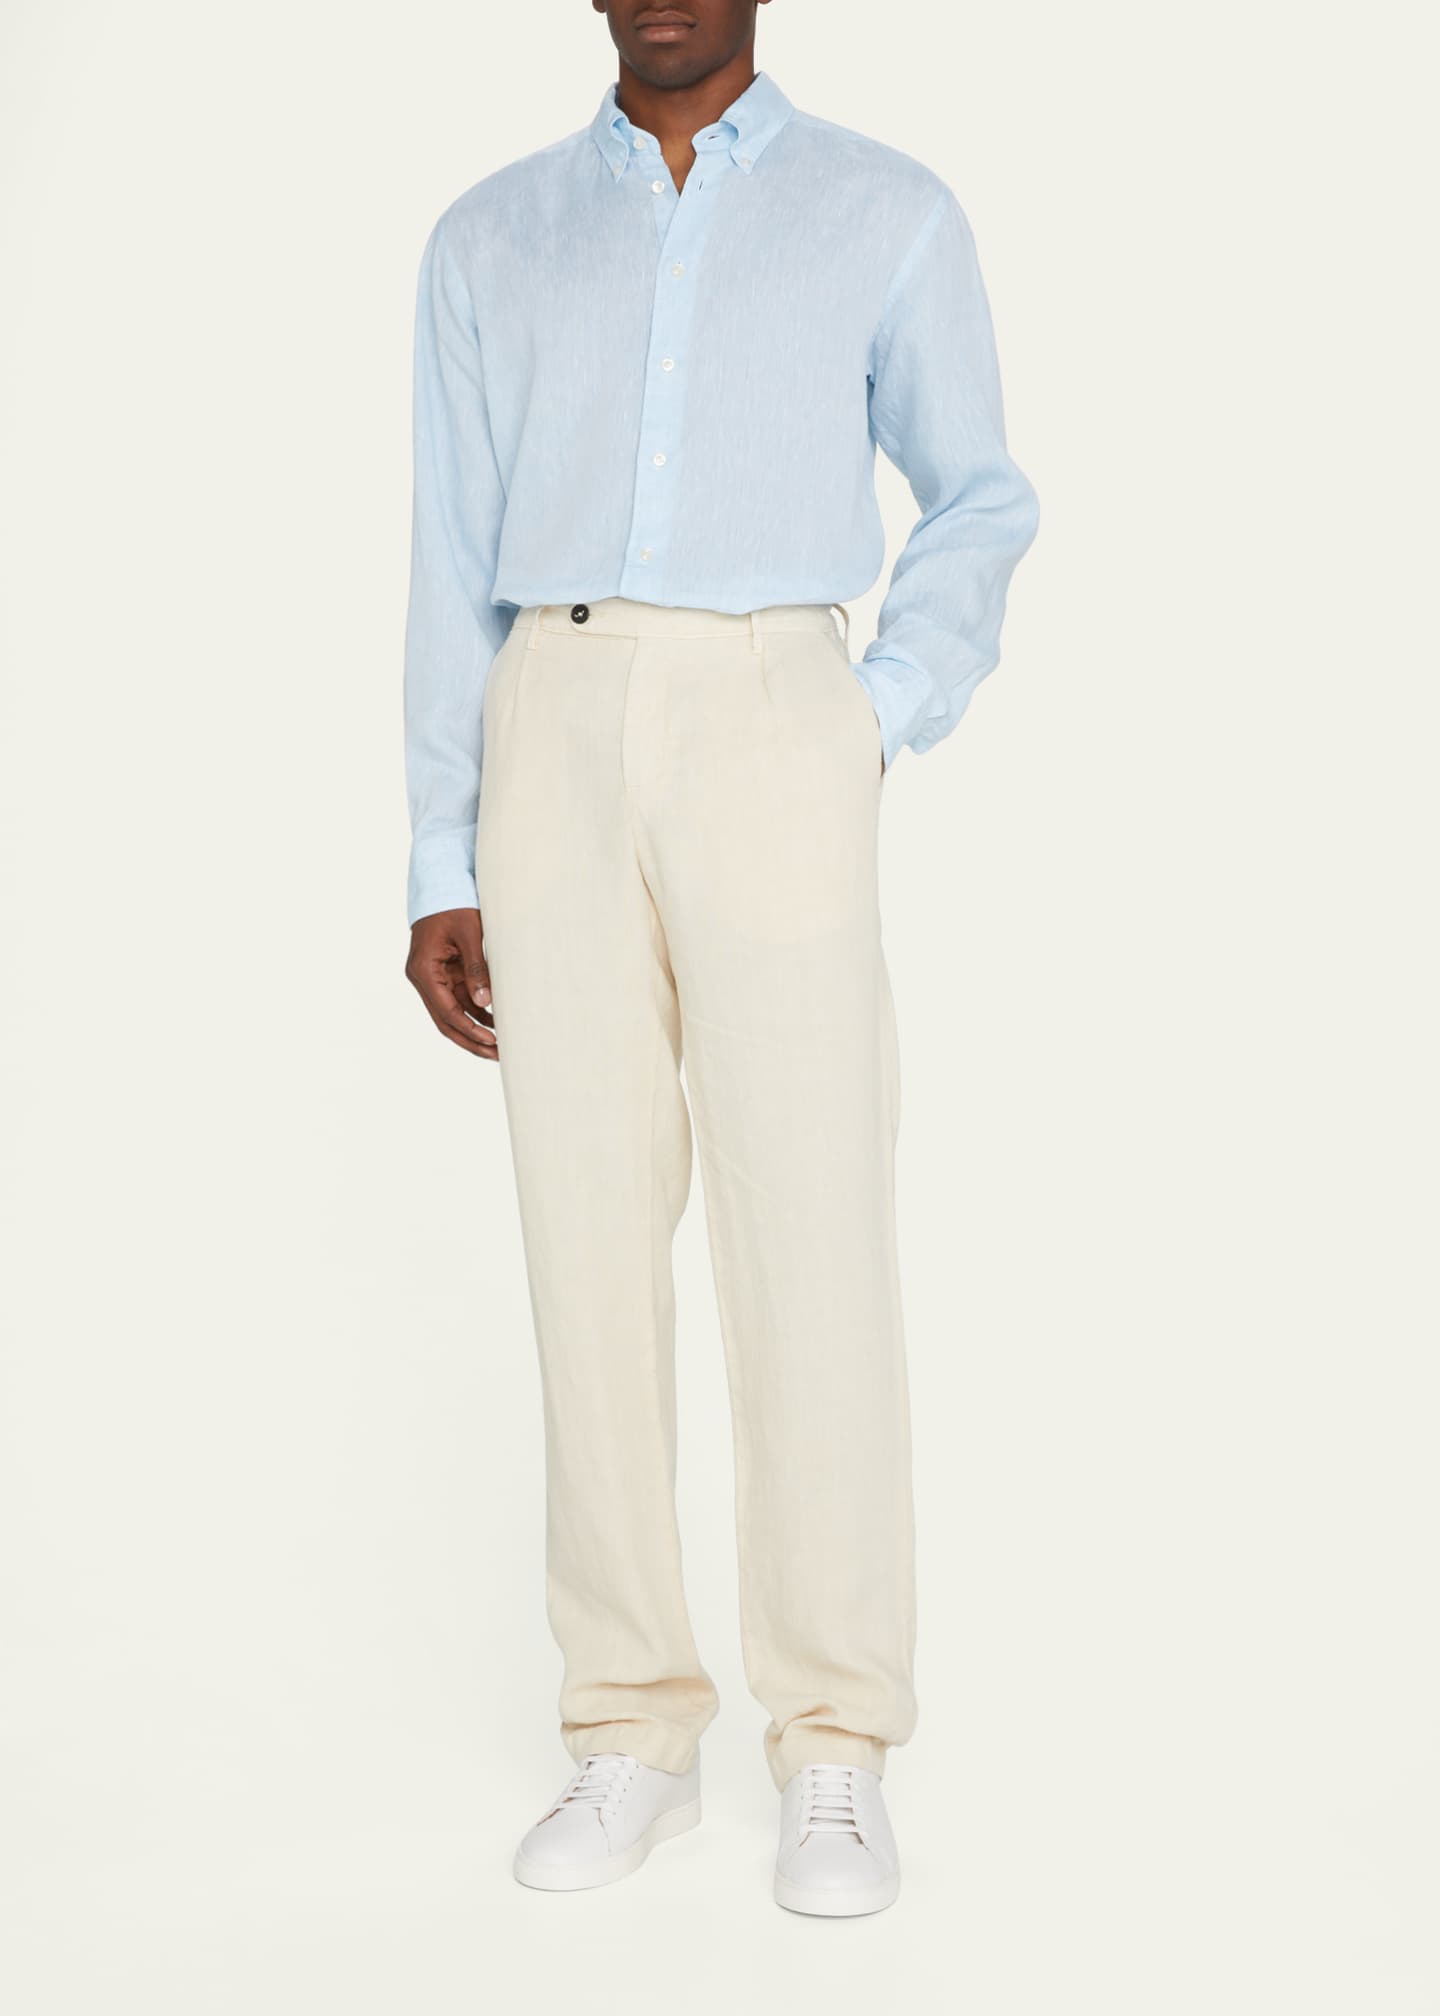 Eton Men's Linen Contemporary Fit Sport Shirt - Bergdorf Goodman